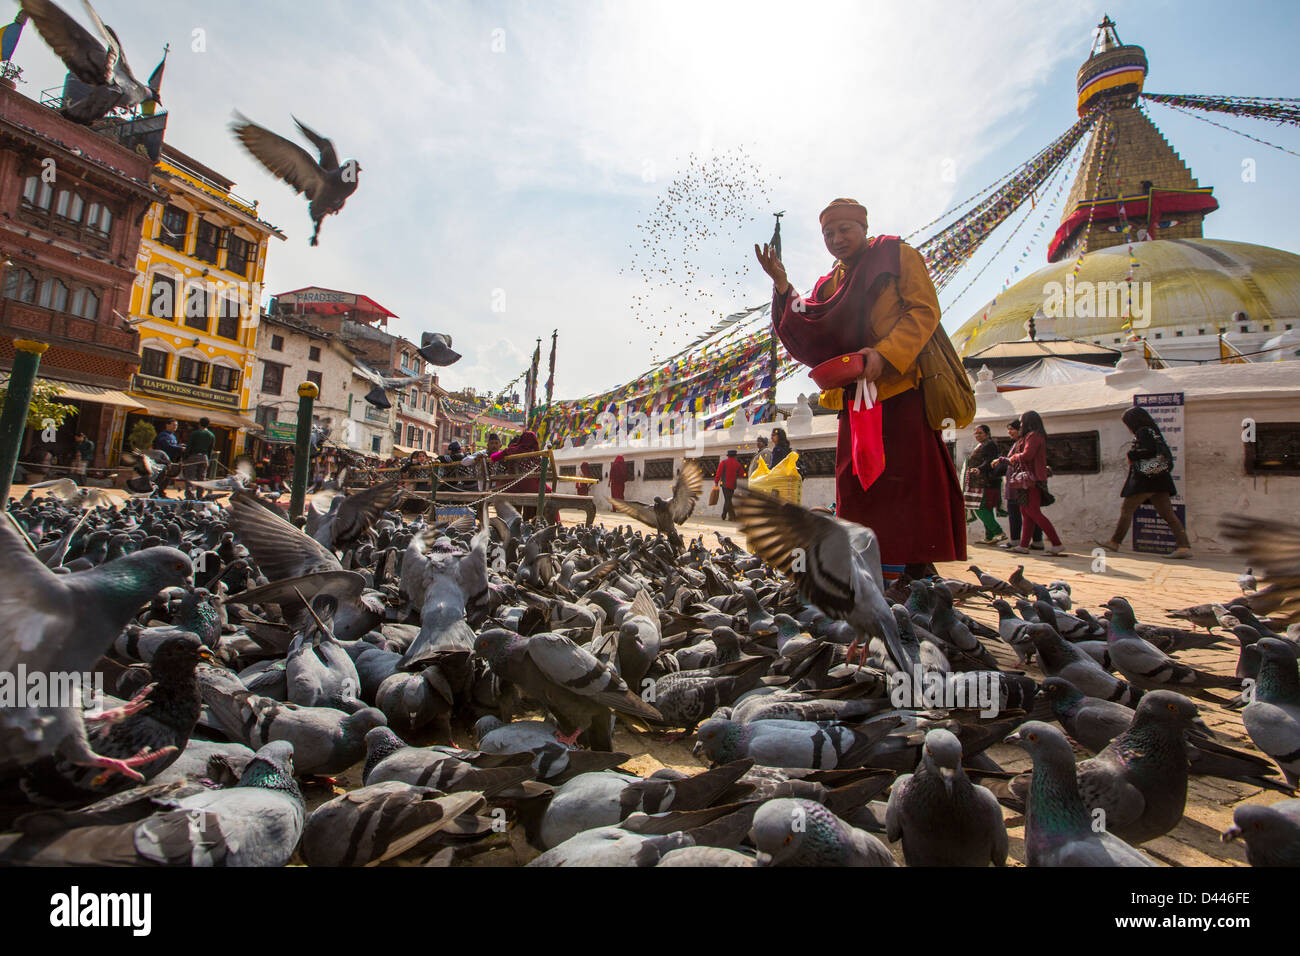 Monk feeding pigeons, Boudhanath Stupa, Kathmandu, Nepal Stock Photo